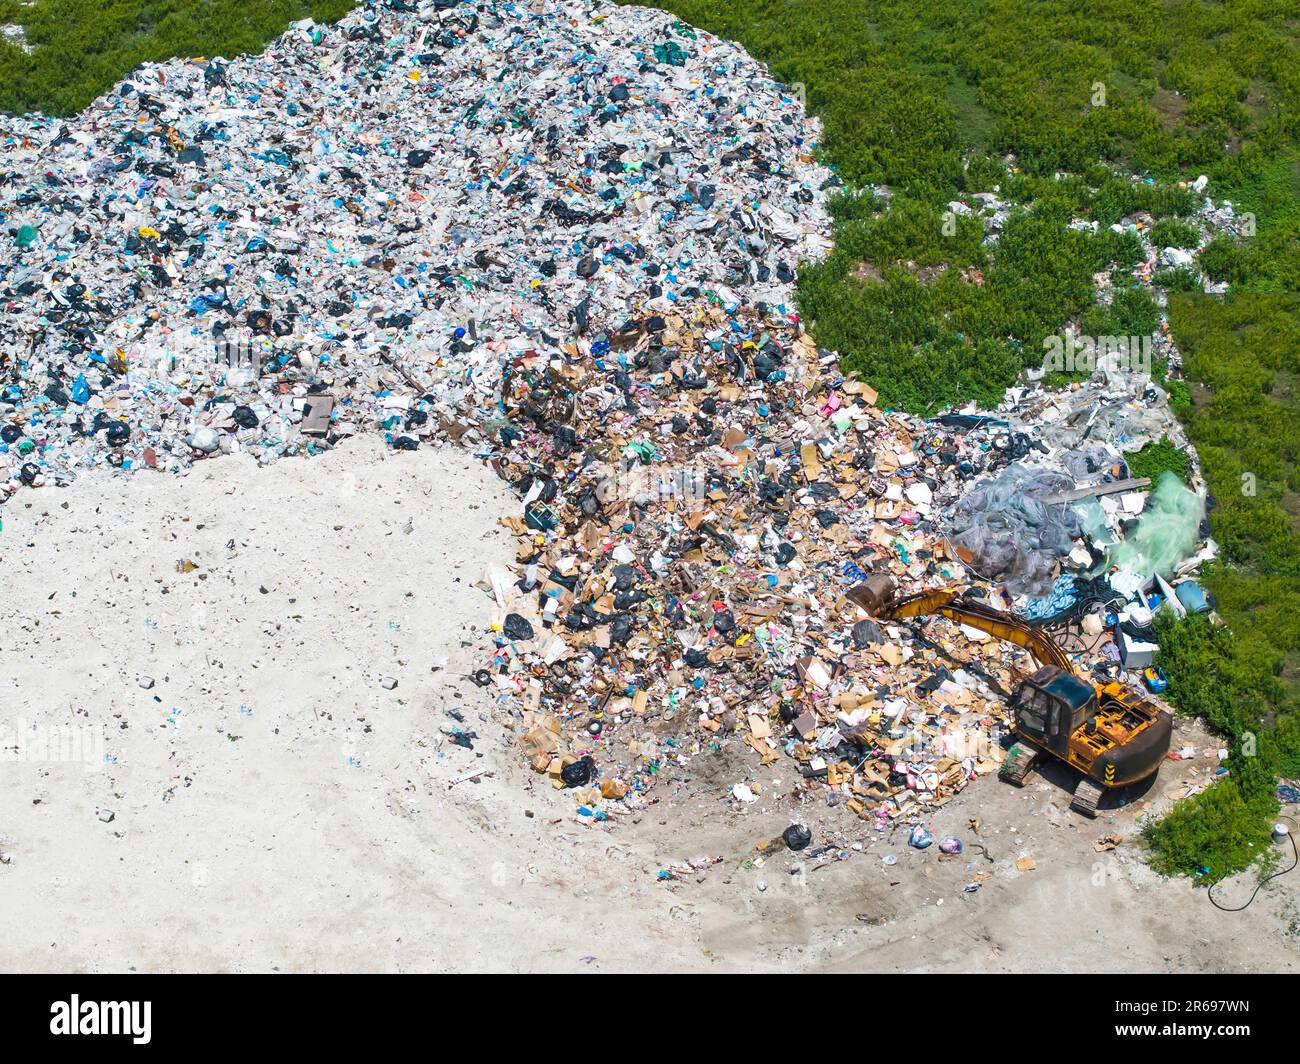 Luftaufnahme Mülldeponie, Hausmüll in Mülldeponie Müll und verschiedene Abfälle, Umweltverschmutzung. Stockfoto